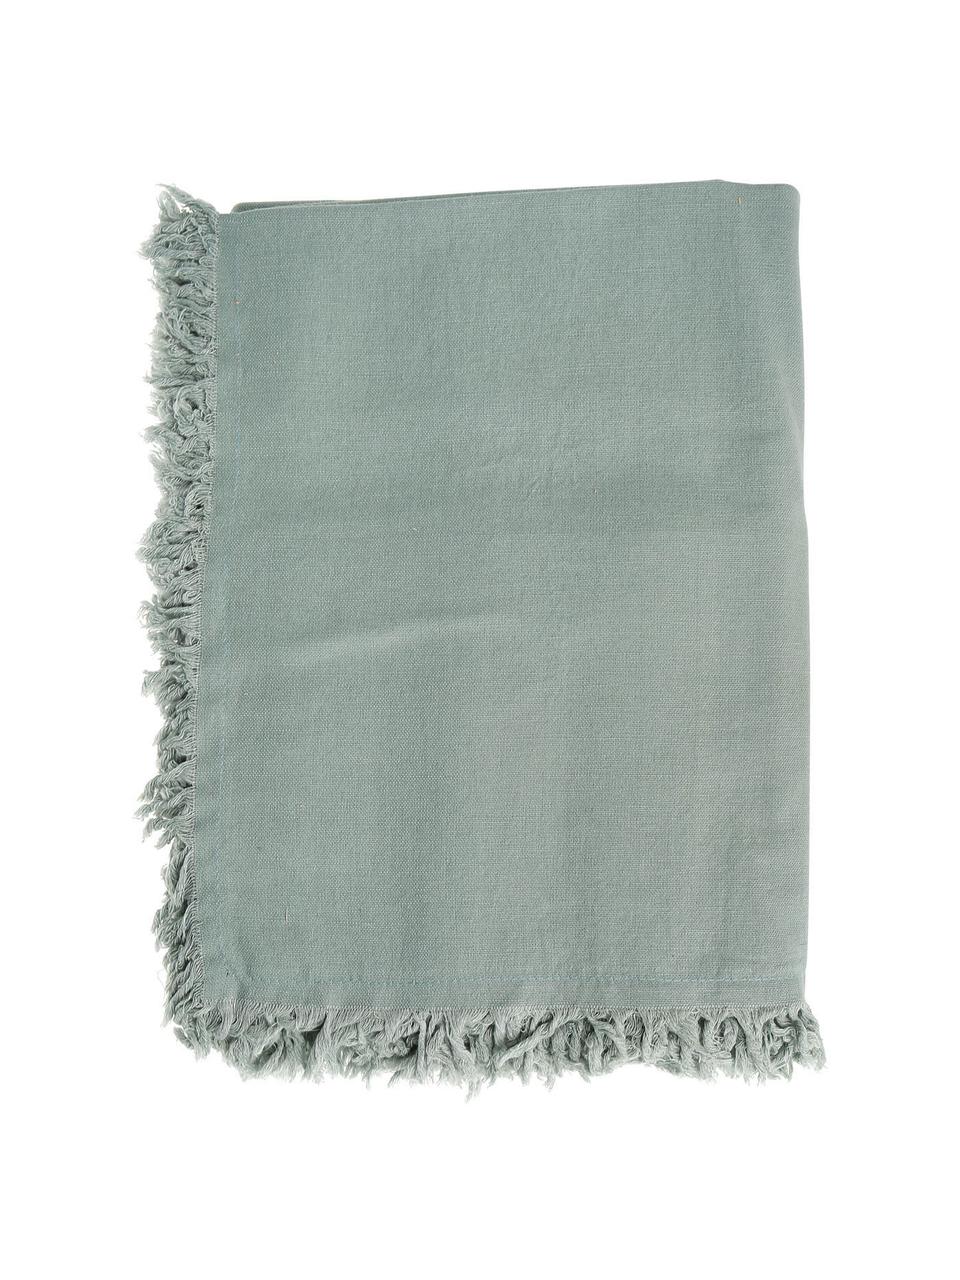 Mantel de algodón con flecos Nalia, 100% algodón, Verde salvia, De 4 a 6 comensales (An 160 x L 160 cm)